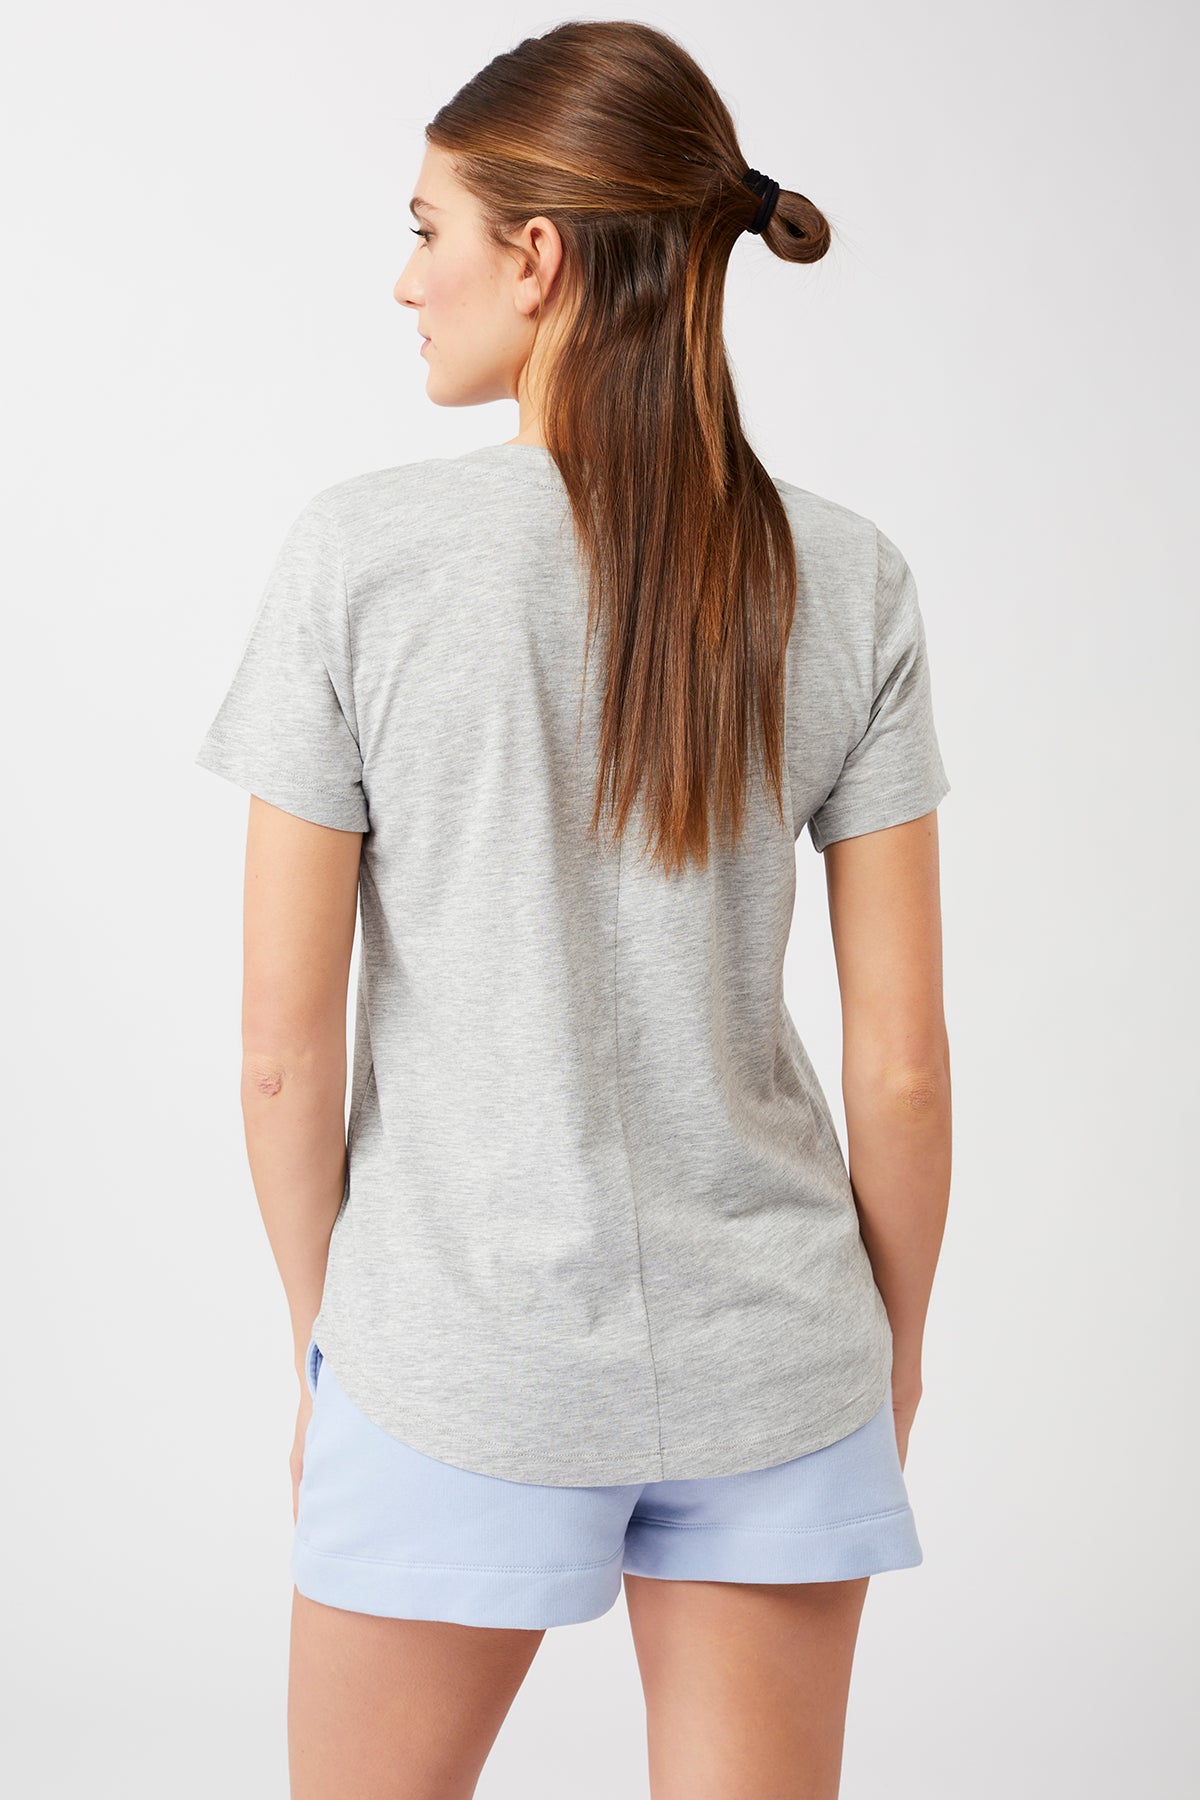 Mandala Yoga Shirt Grau Rückseite - The New V-Neck